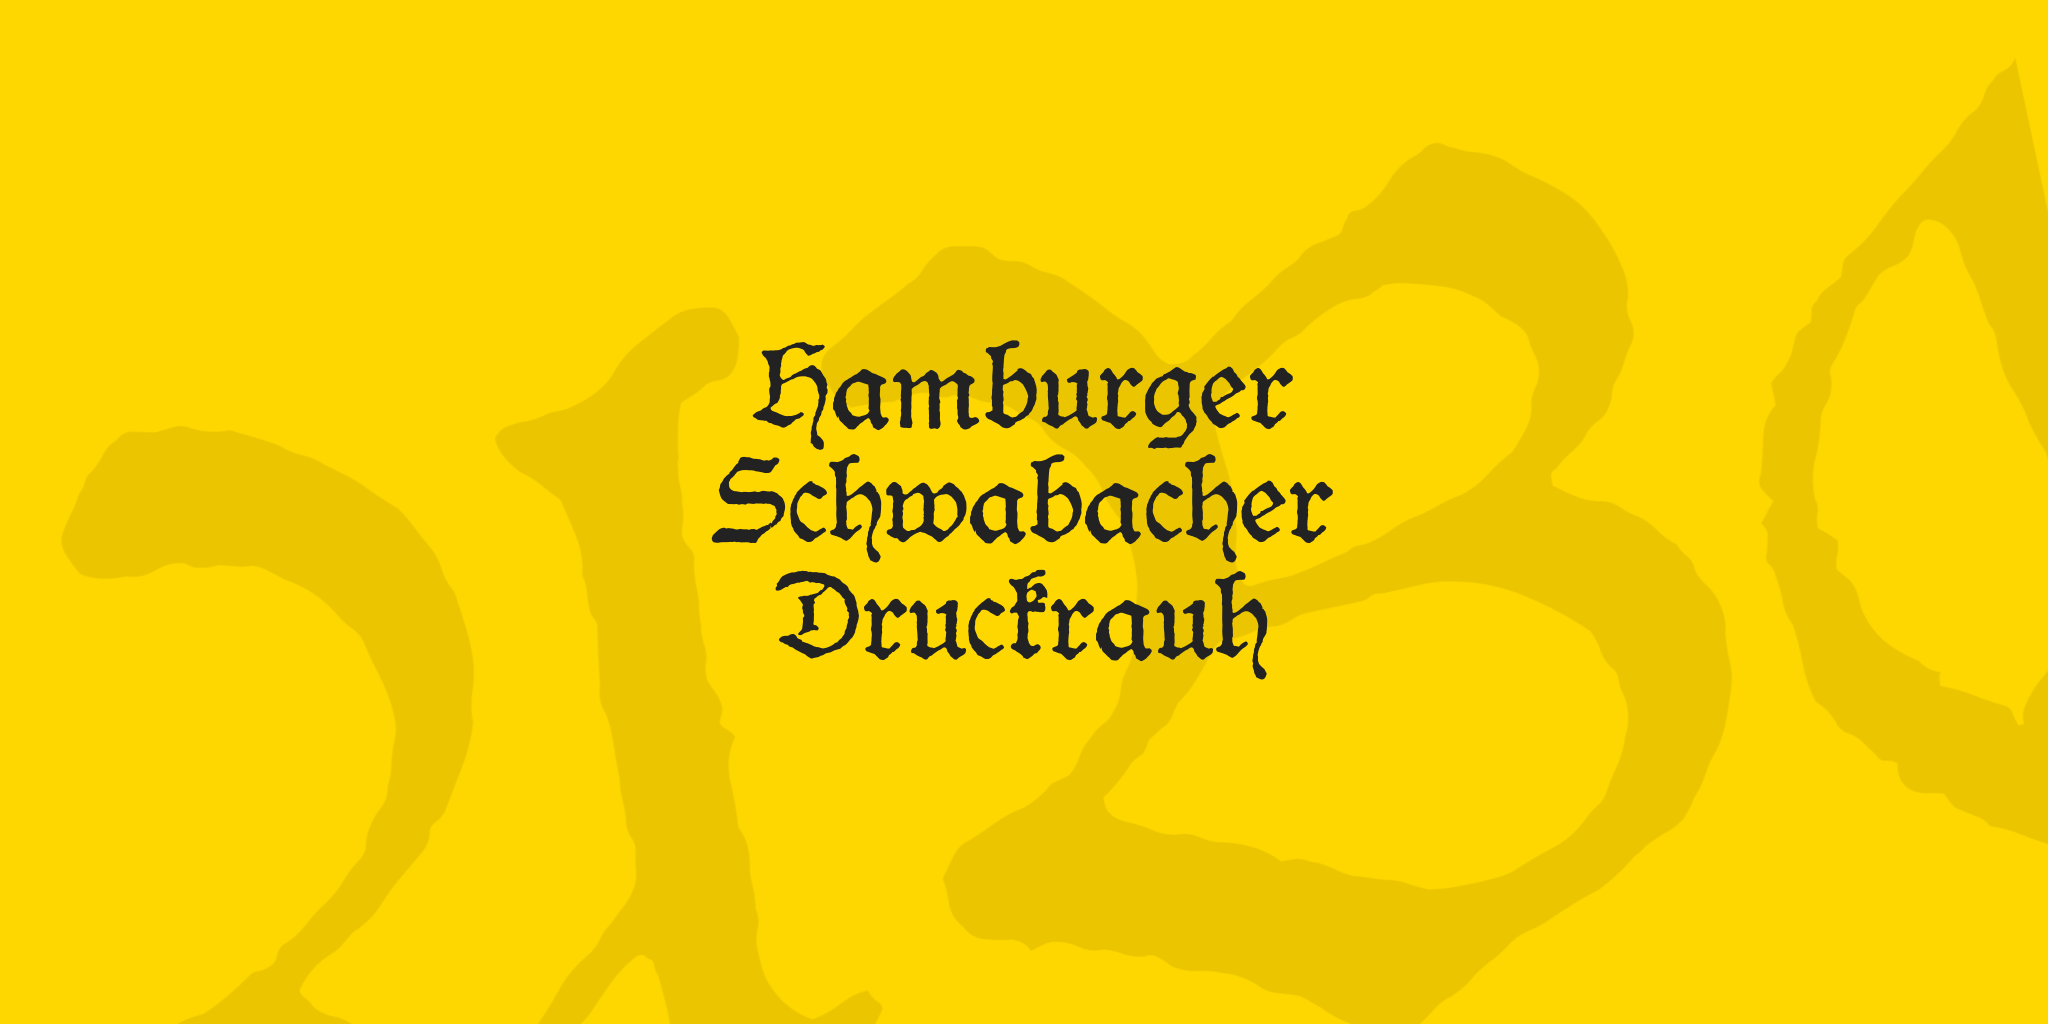 Hamburger Schwabacher Druckrauh